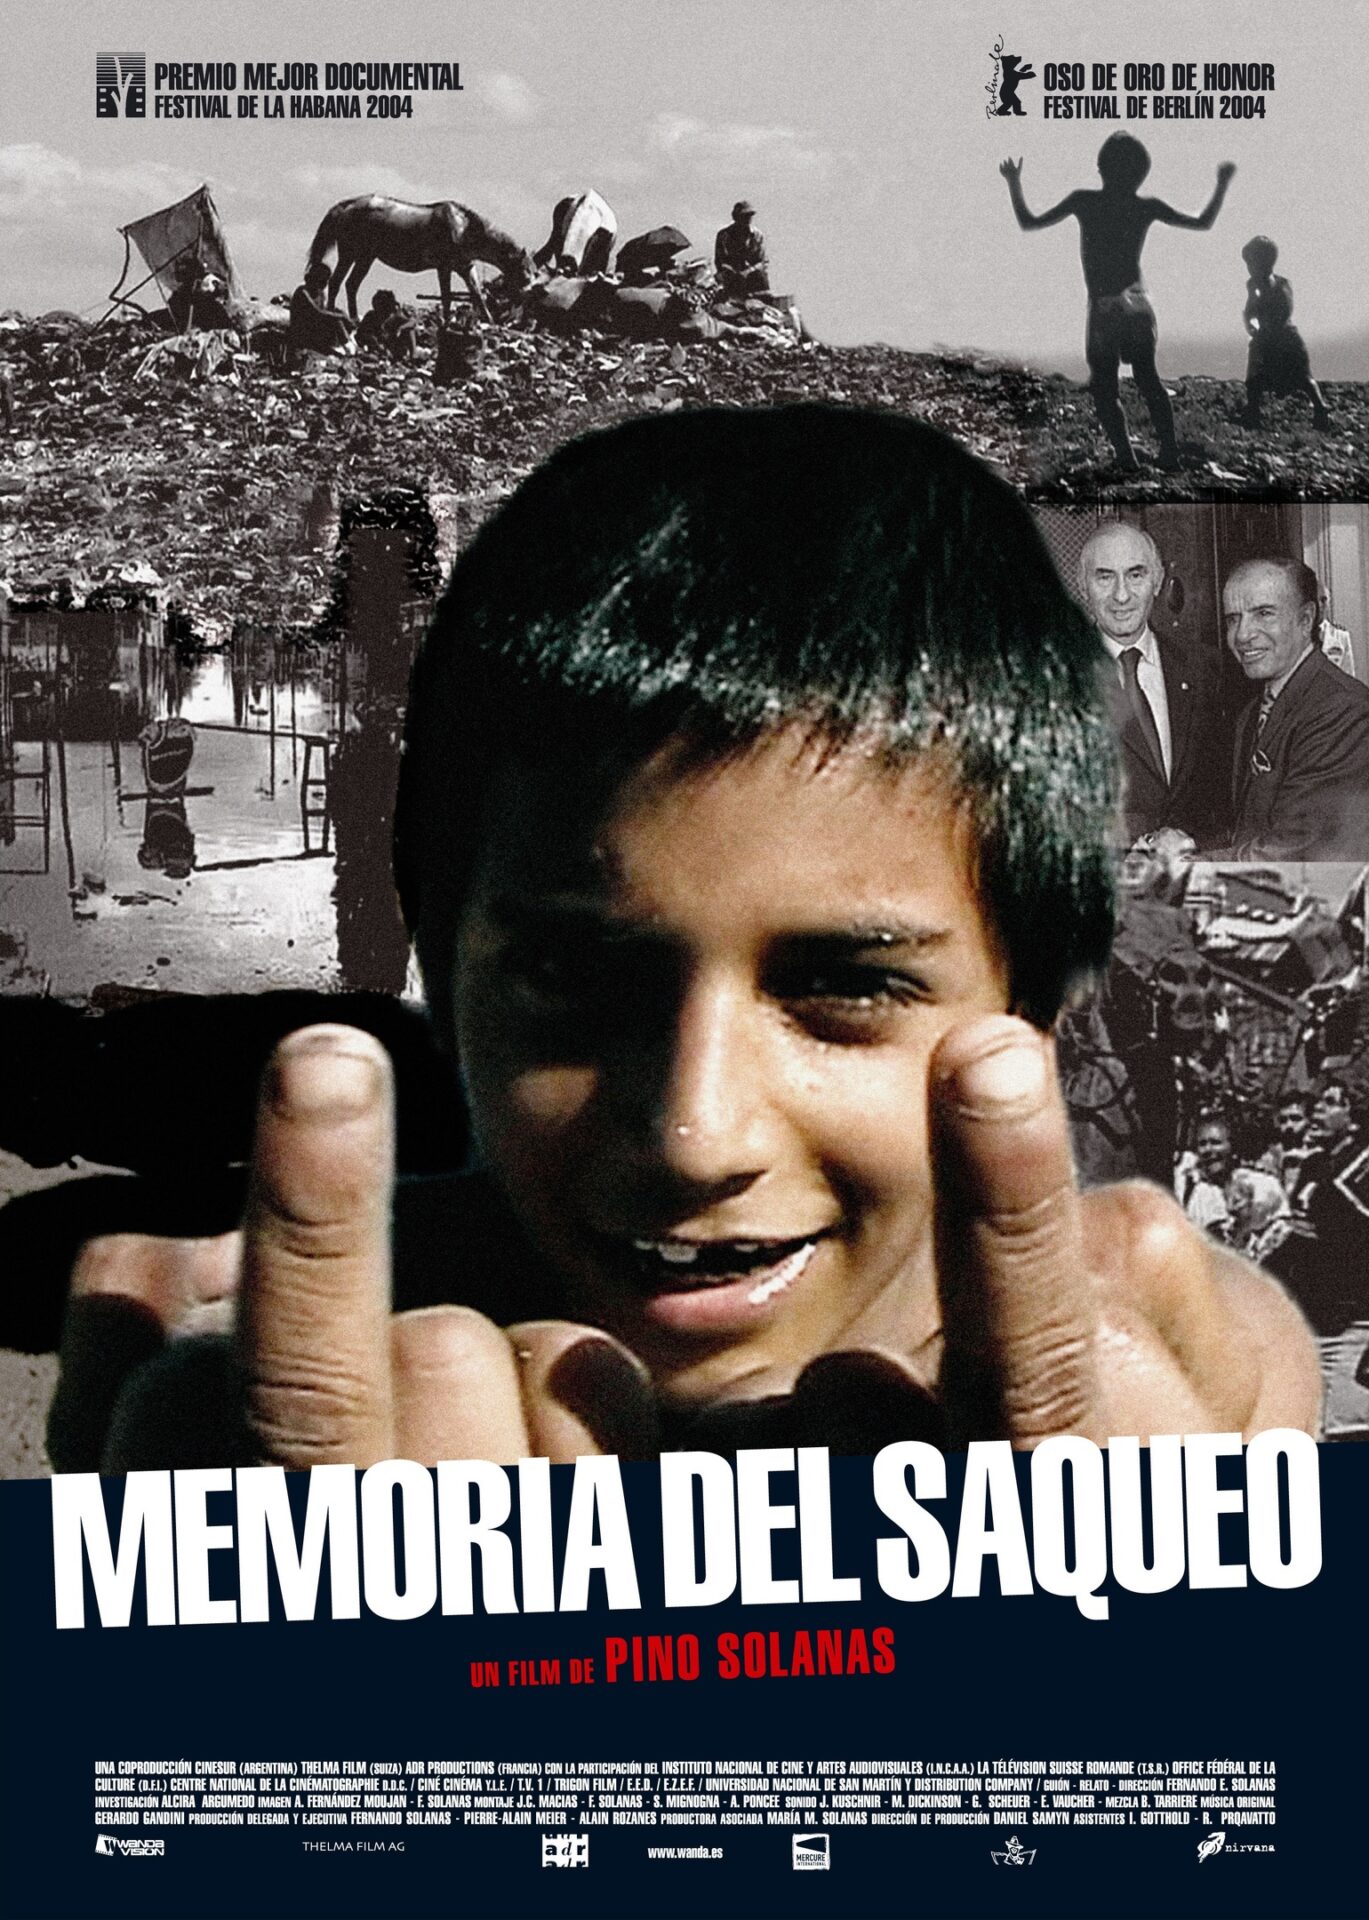 Социальный геноцид (Memoria del saqueo), 2004
